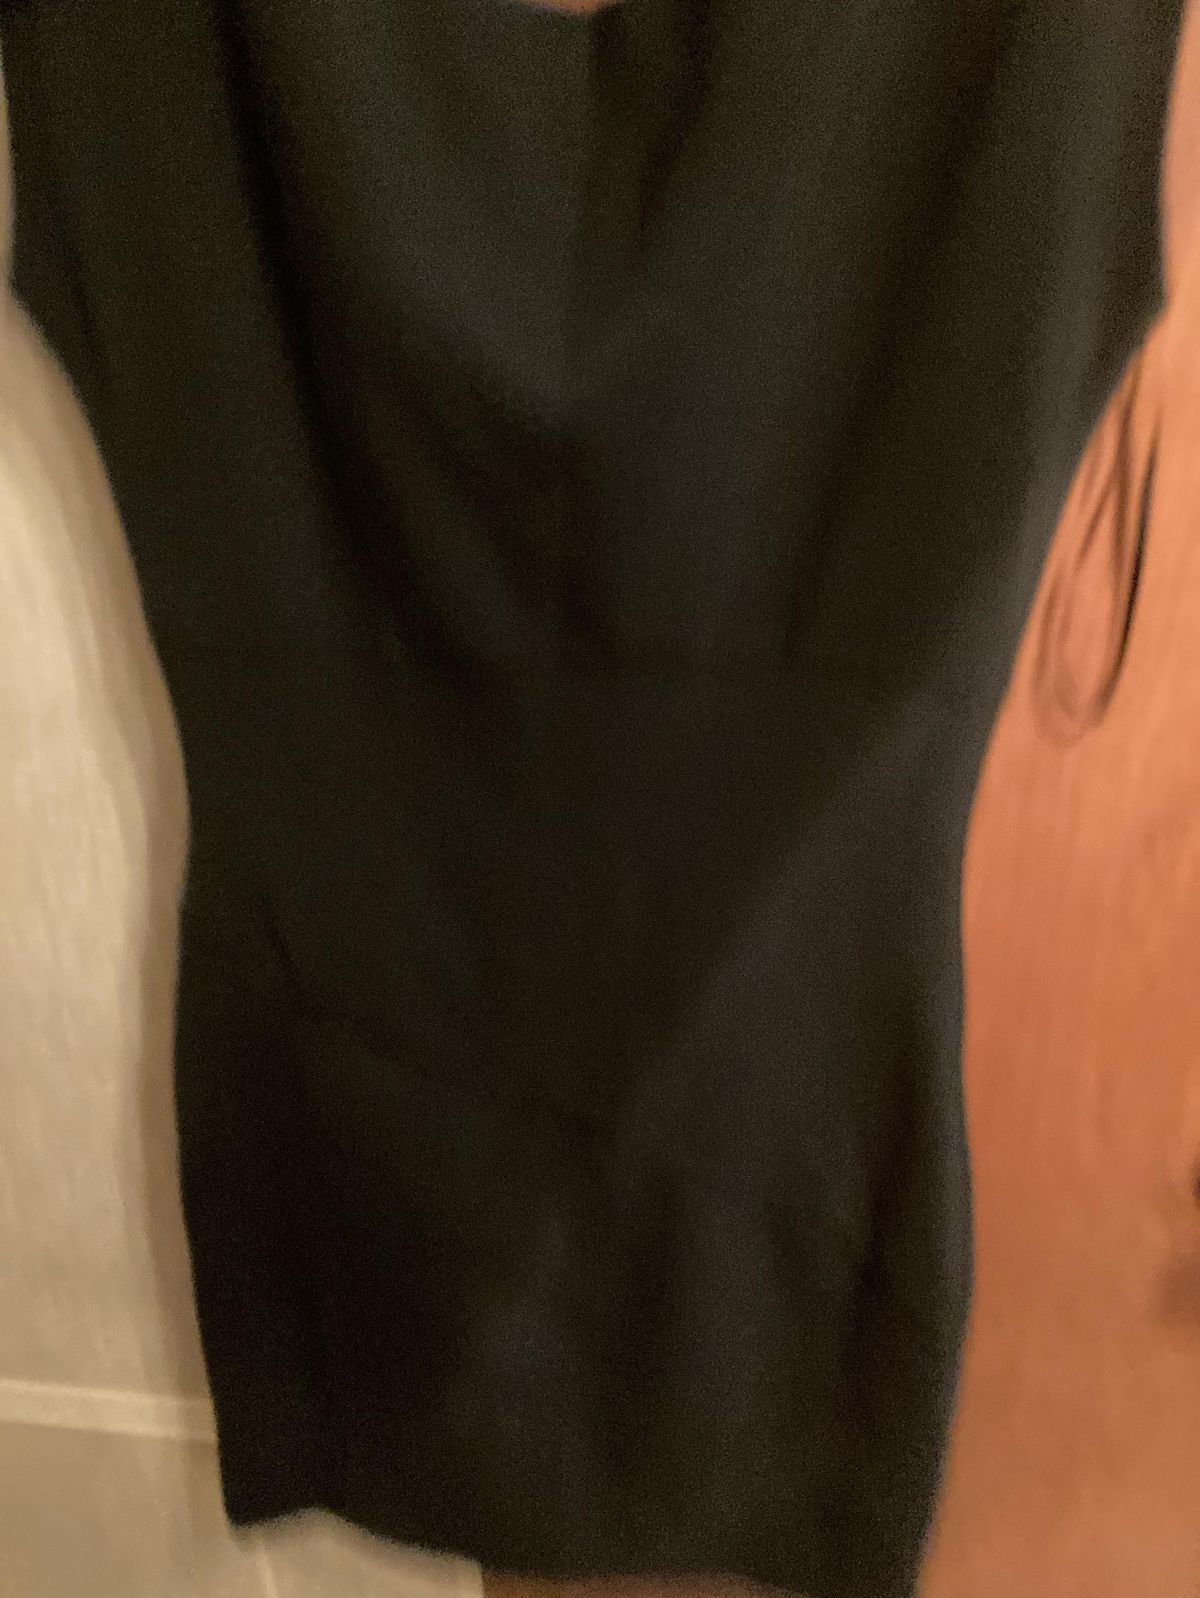 Dianne Von Furstenberg Size 12 Black Cocktail Dress on Queenly